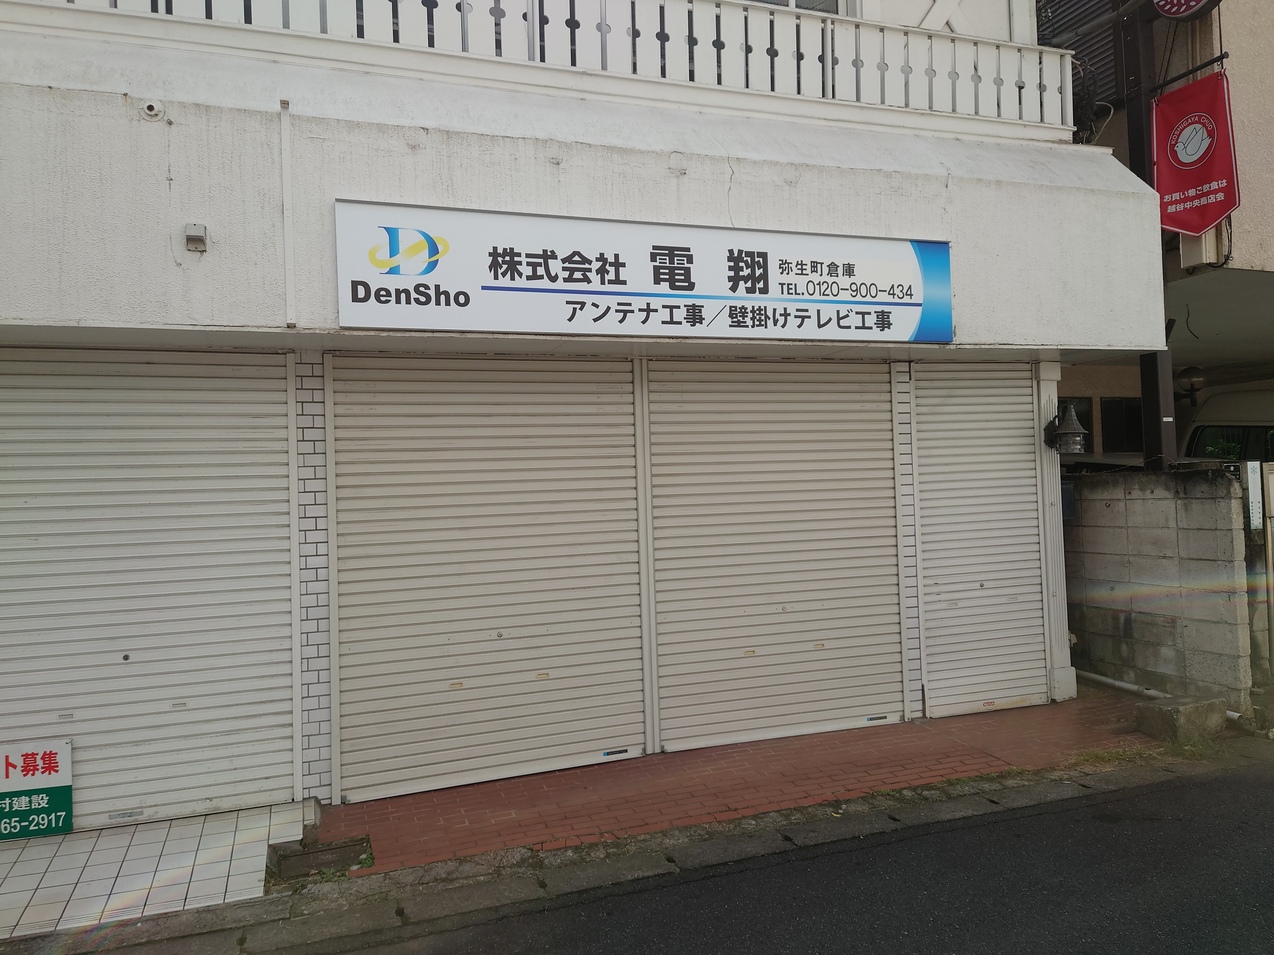 昨日の記事で取り上げた保護猫カフェさくら2号店産の並びに株式会社電翔さんの倉庫も...